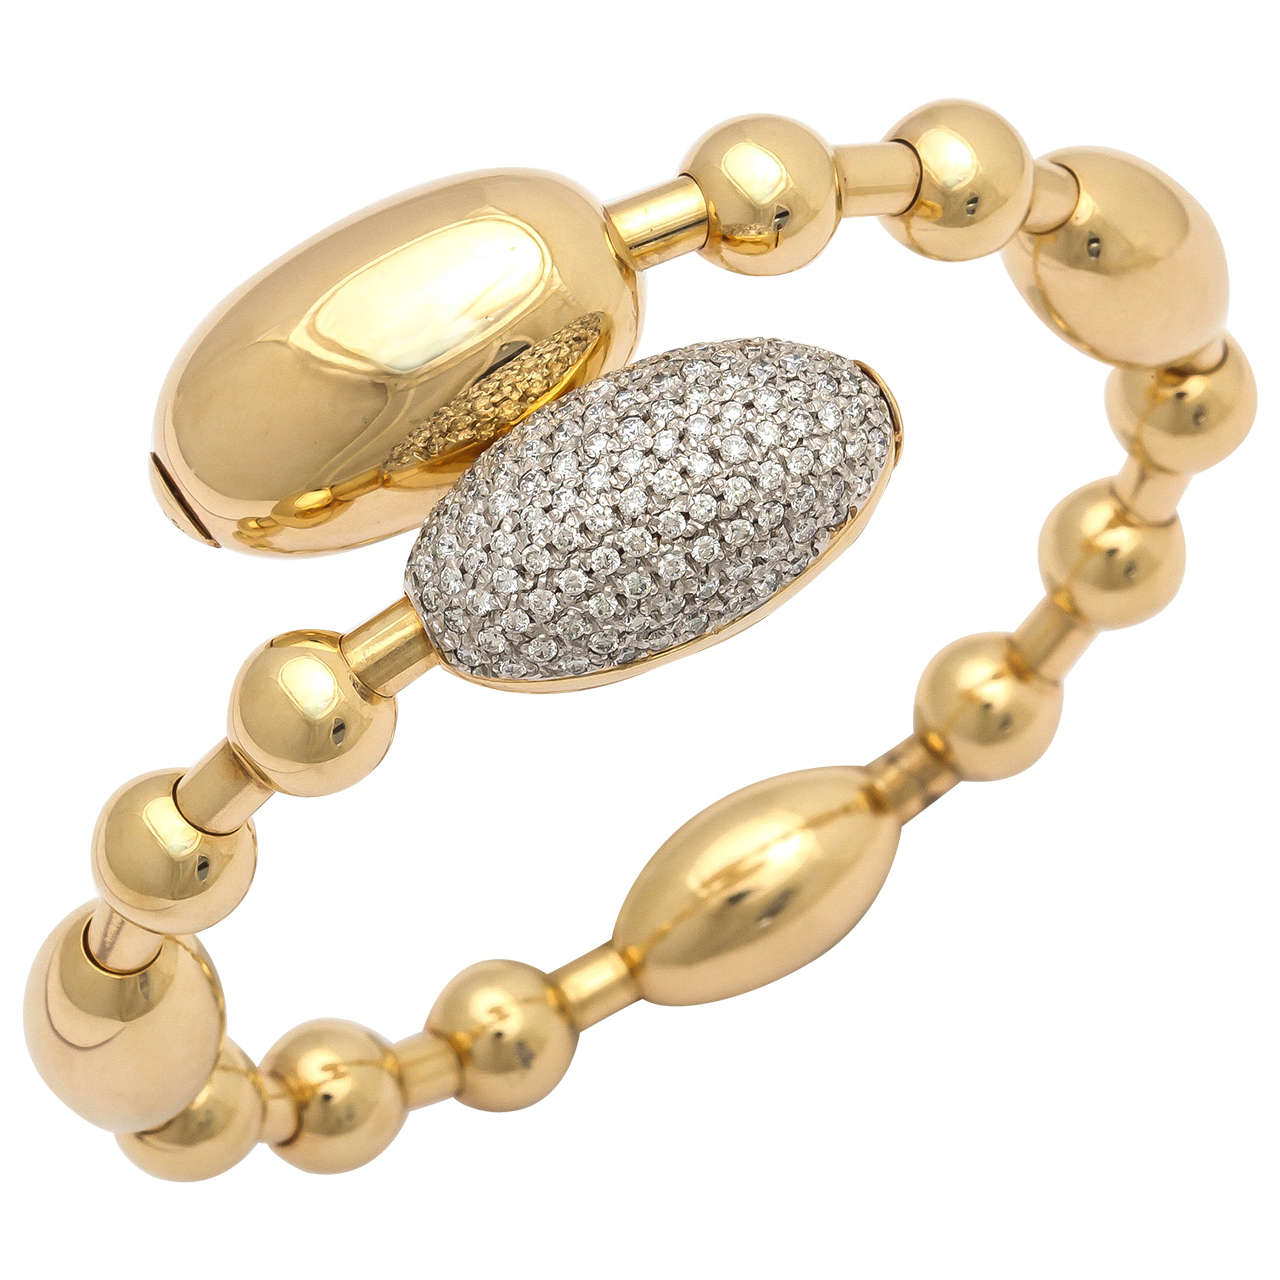 Faraone Mennella Tuca Tuca Diamond Gold Bangle Bracelet For Sale